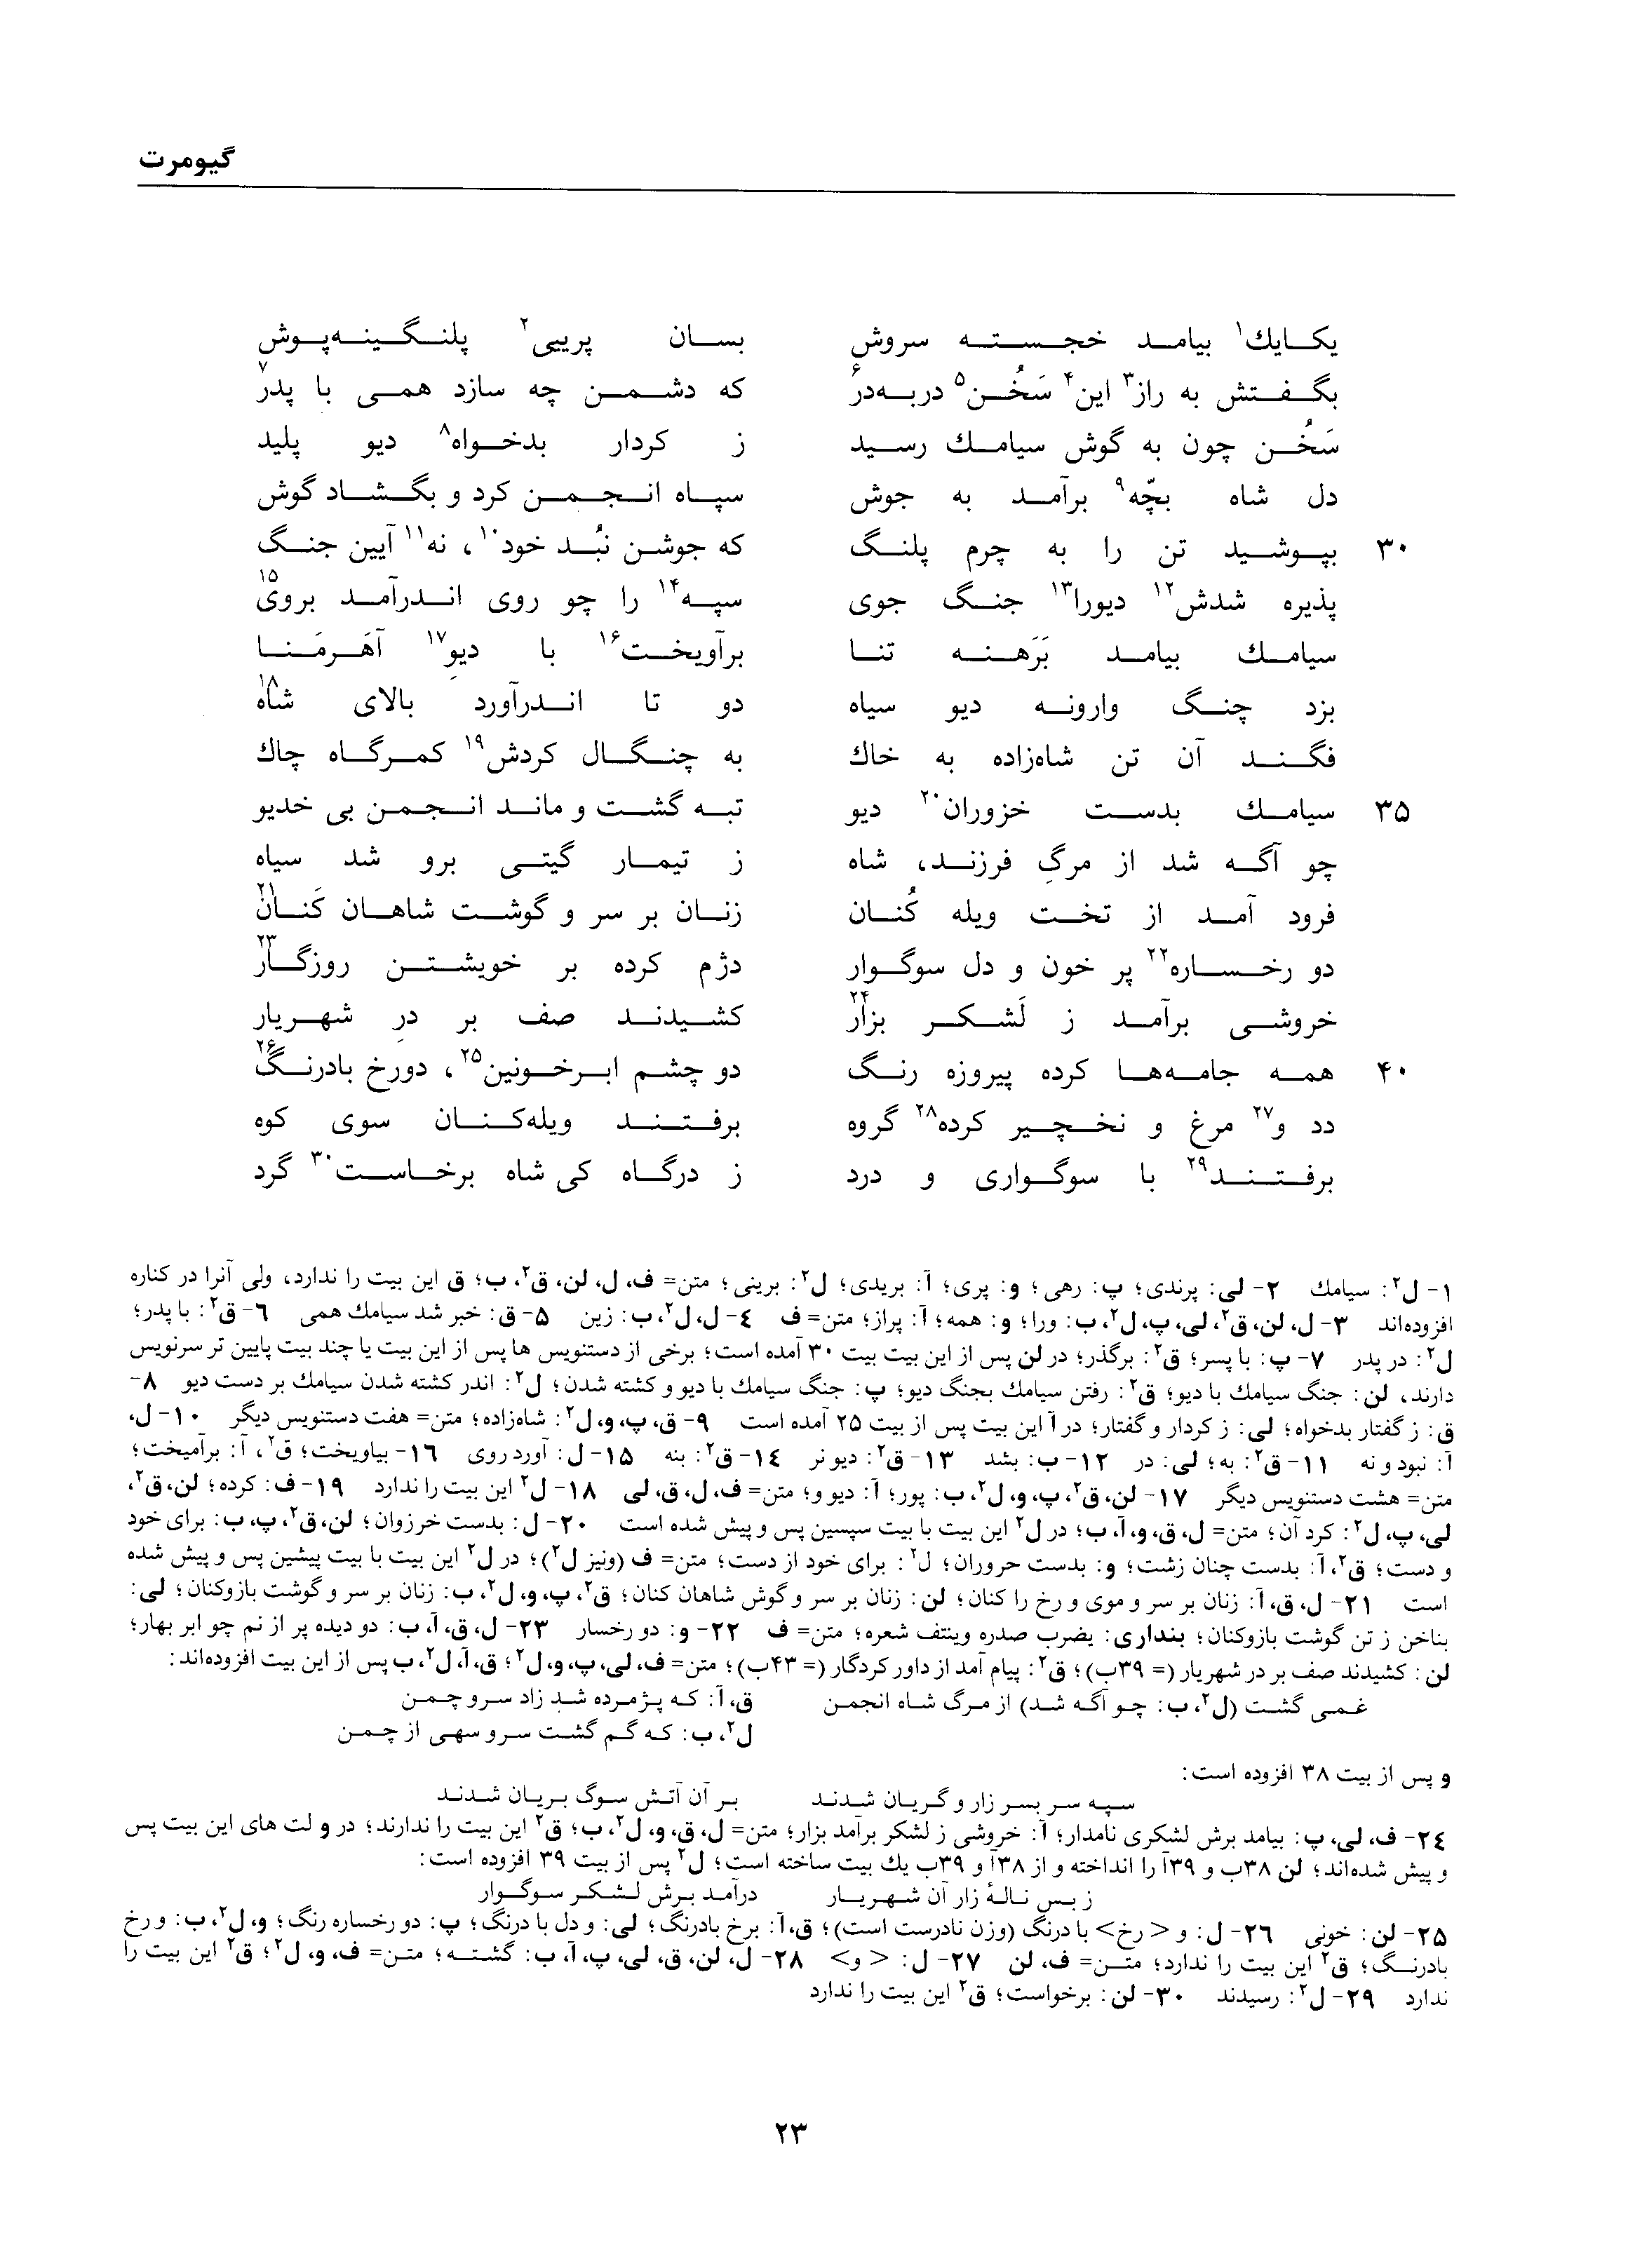 vol. 1, p. 23